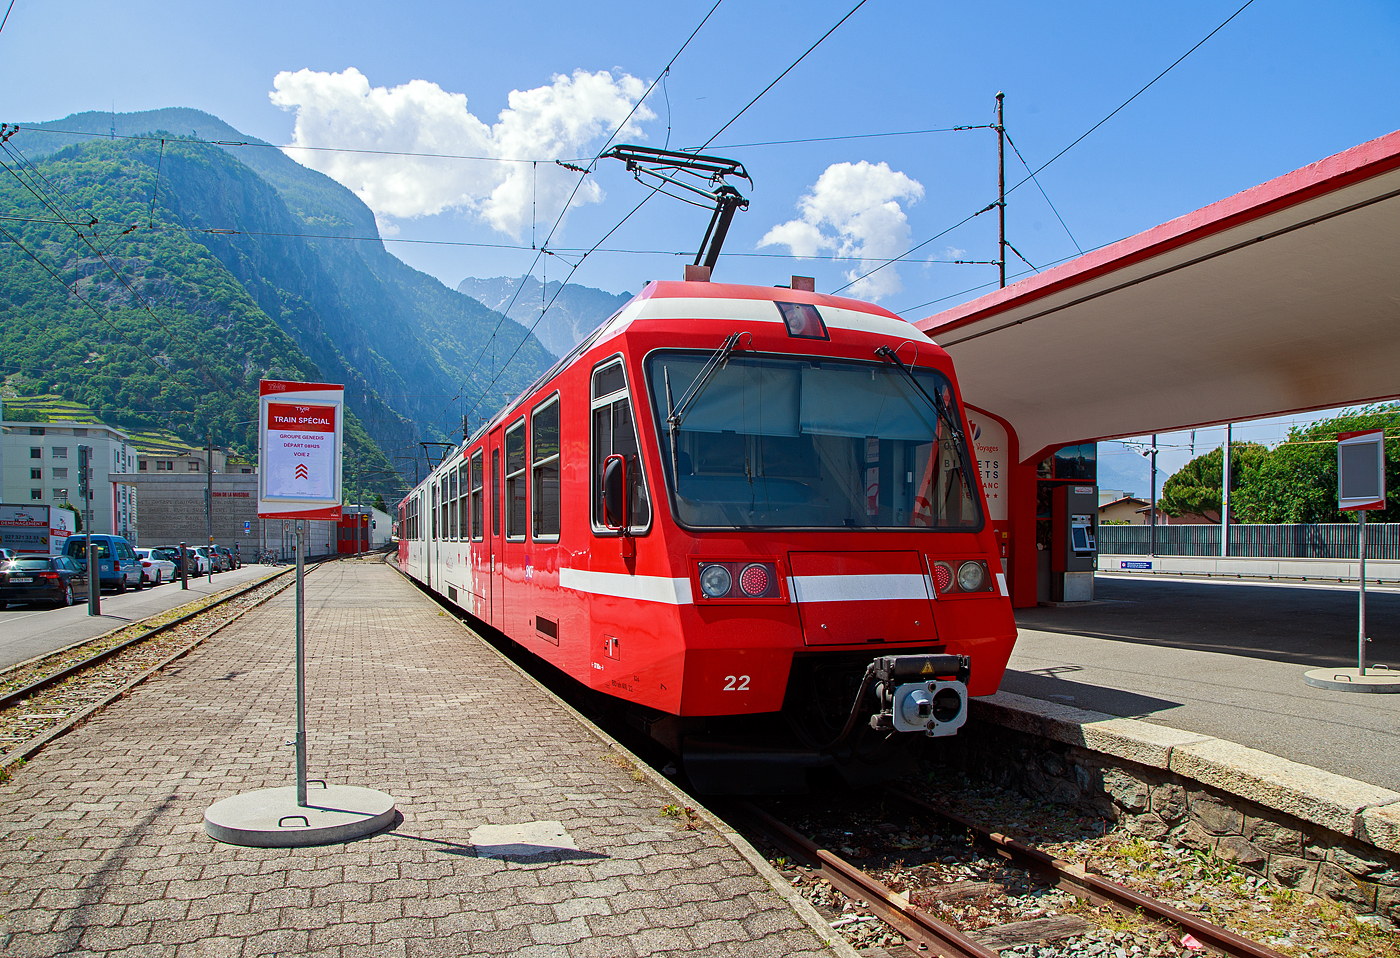 Der Triebwagen TMR BDeh 4/8 22 (Z 823/Z 824), TSI-Nr. 90 85 838 0822-9 CH-TMRSA verlässt am 26. Mai 2023, als R132  „Mont-Blanc Express“ nach Vallorcine (F) via Châtelard, den Bahnhof Martigny (deutsch Martinach). Vom französischen Bahnhof Vallorcine kann man dann mit der SNCF die weiterführende Bahnstrecke via Chamonix nach Saint-Gervais weiterfahren.

Die beiden Triebwagen BDeh 4/8 21–22, für den gemischtem Adhäsions- und Zahnradbetrieb, der Martigny-Châtelard-Bahn (MC), wie auch die drei weitere französische Triebwagen SNCF Z800 801/802, 803/804 und 805/806, wurden (durch die gemeinsame Bestellung) die mechanischen Teile von Vevey Technologies SA in Villeneuve (vormals ACMV - Ateliers de constructions mécaniques de Vevey, später Bombardier Transportation) gebaut. Der Zahnradteil ist von der SLM, die elektrische Ausrüstung von Adtranz.

TECHNISCHE DATEN:
Bezeichnung: TMR BDeh 4/8 (21–22), SNCF Z800 (801/802, 803/804 und 805/806)
Gebaute Anzahl: 5 
Spurweite: 1.000 mm (Meterspur)
Achsfolge: Bo'zz 2' + 2' Bo'zz
Zahnstangensystem: Riggenbach (bzw. Strub)
Länge über Kupplung: 37.800 mm
Leergewicht: 72,0 t
Leistung: 2 x 1.000 kW
Höchstgeschwindigkeit mit Adhäsionsantrieb: 70 km/h
Höchstgeschwindigkeit mit Zahnradantrieb: 23 km/h / (Talfahrt 16 km/h)
Antriebsart: Elektrisch über Oberleitung oder seitlicher Stromschiene
Fahrleitungsspannung: 830 V DV (=)
Sitzplätze: 96
Kupplung: Scharfenberg